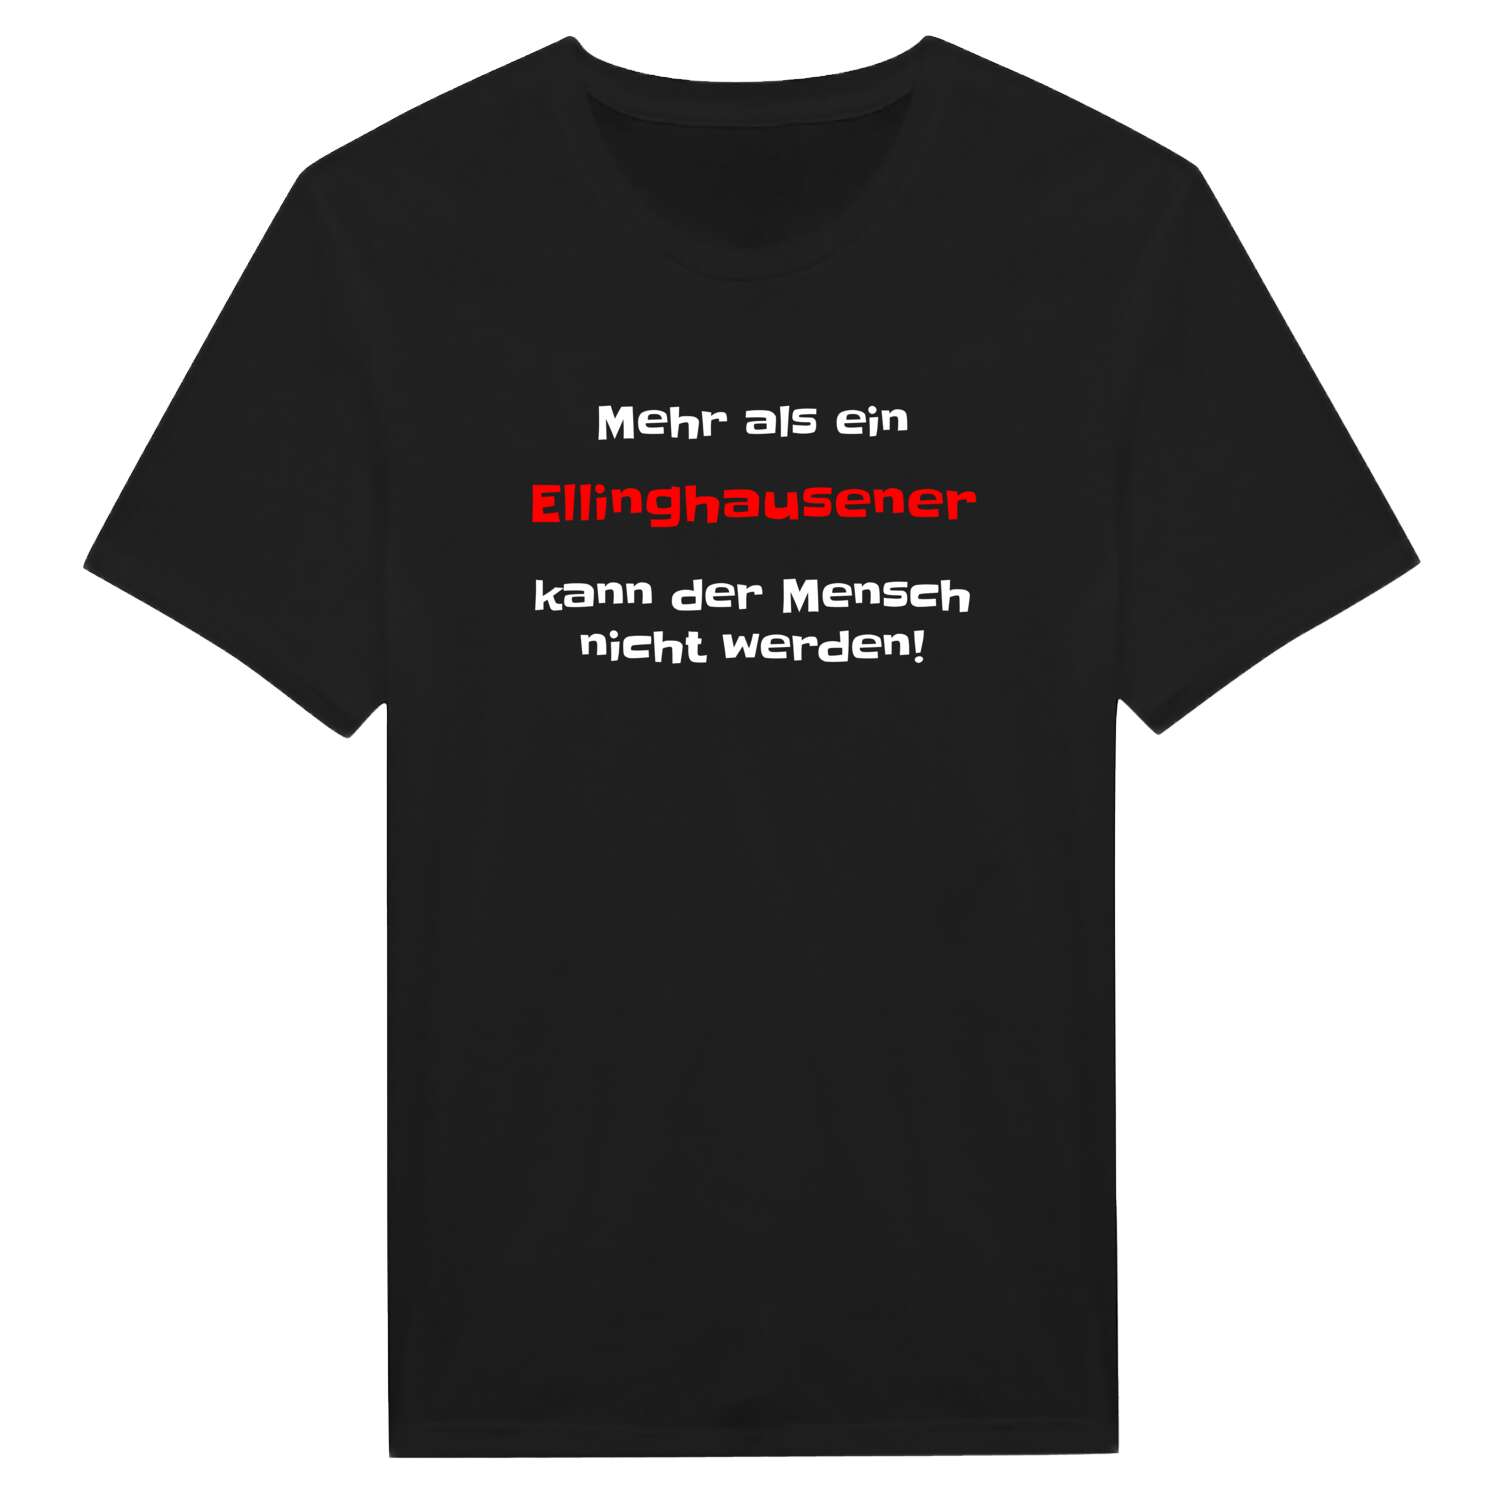 Ellinghausen T-Shirt »Mehr als ein«